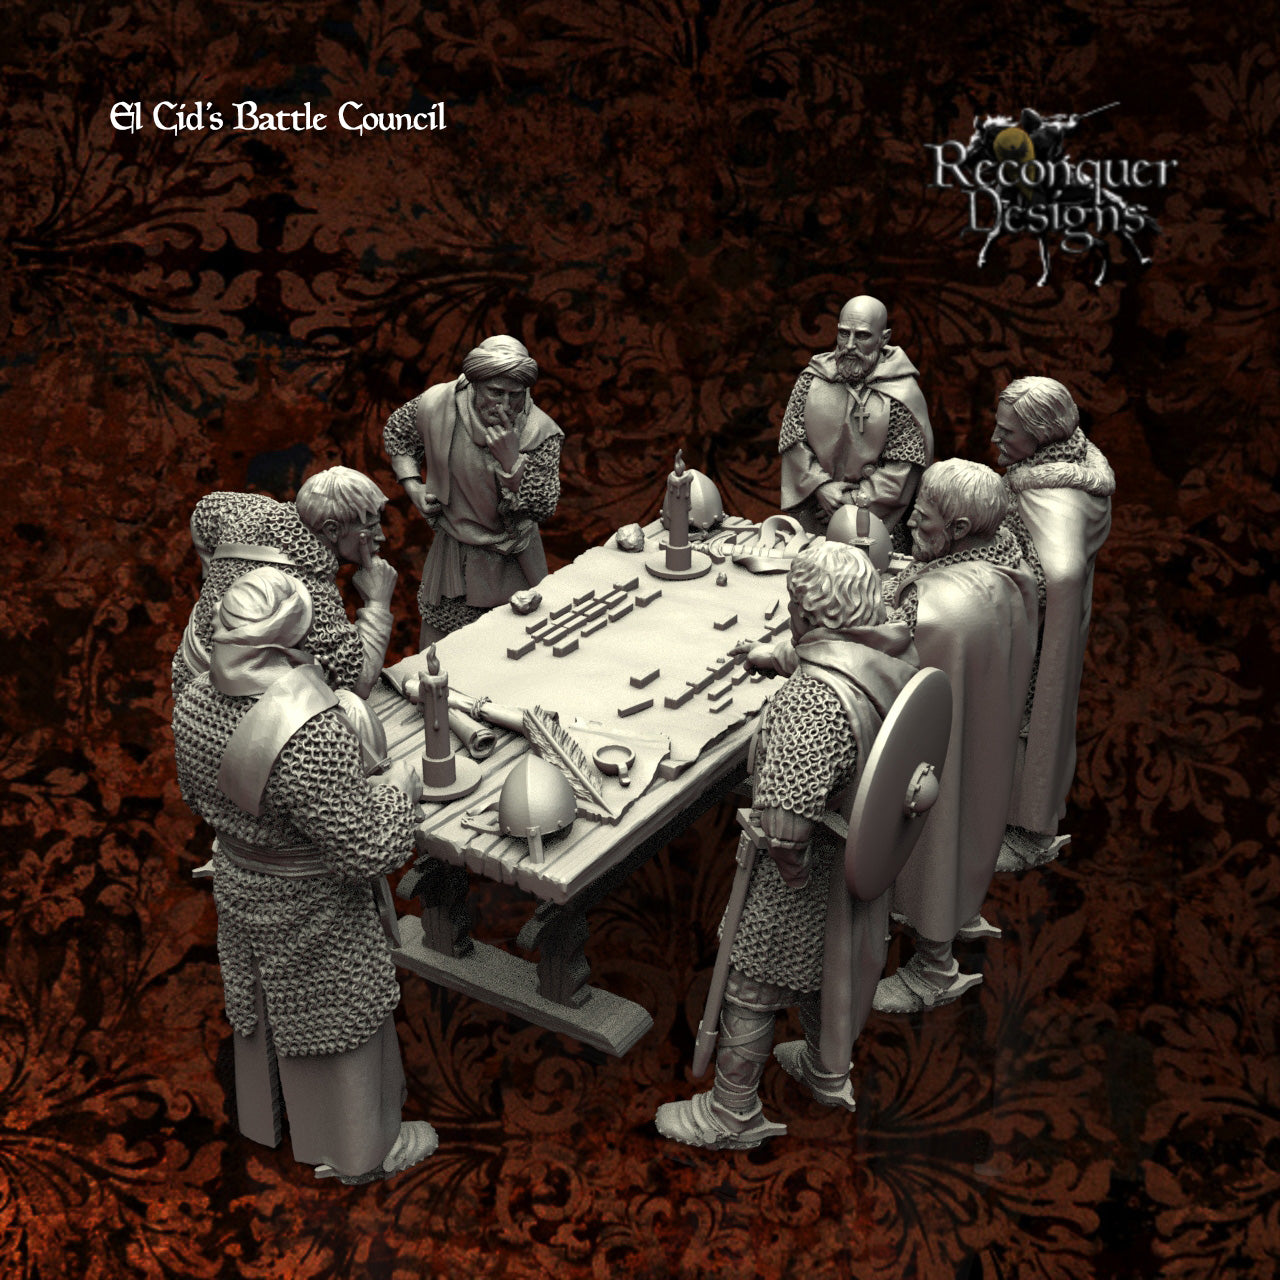 The Battle Council